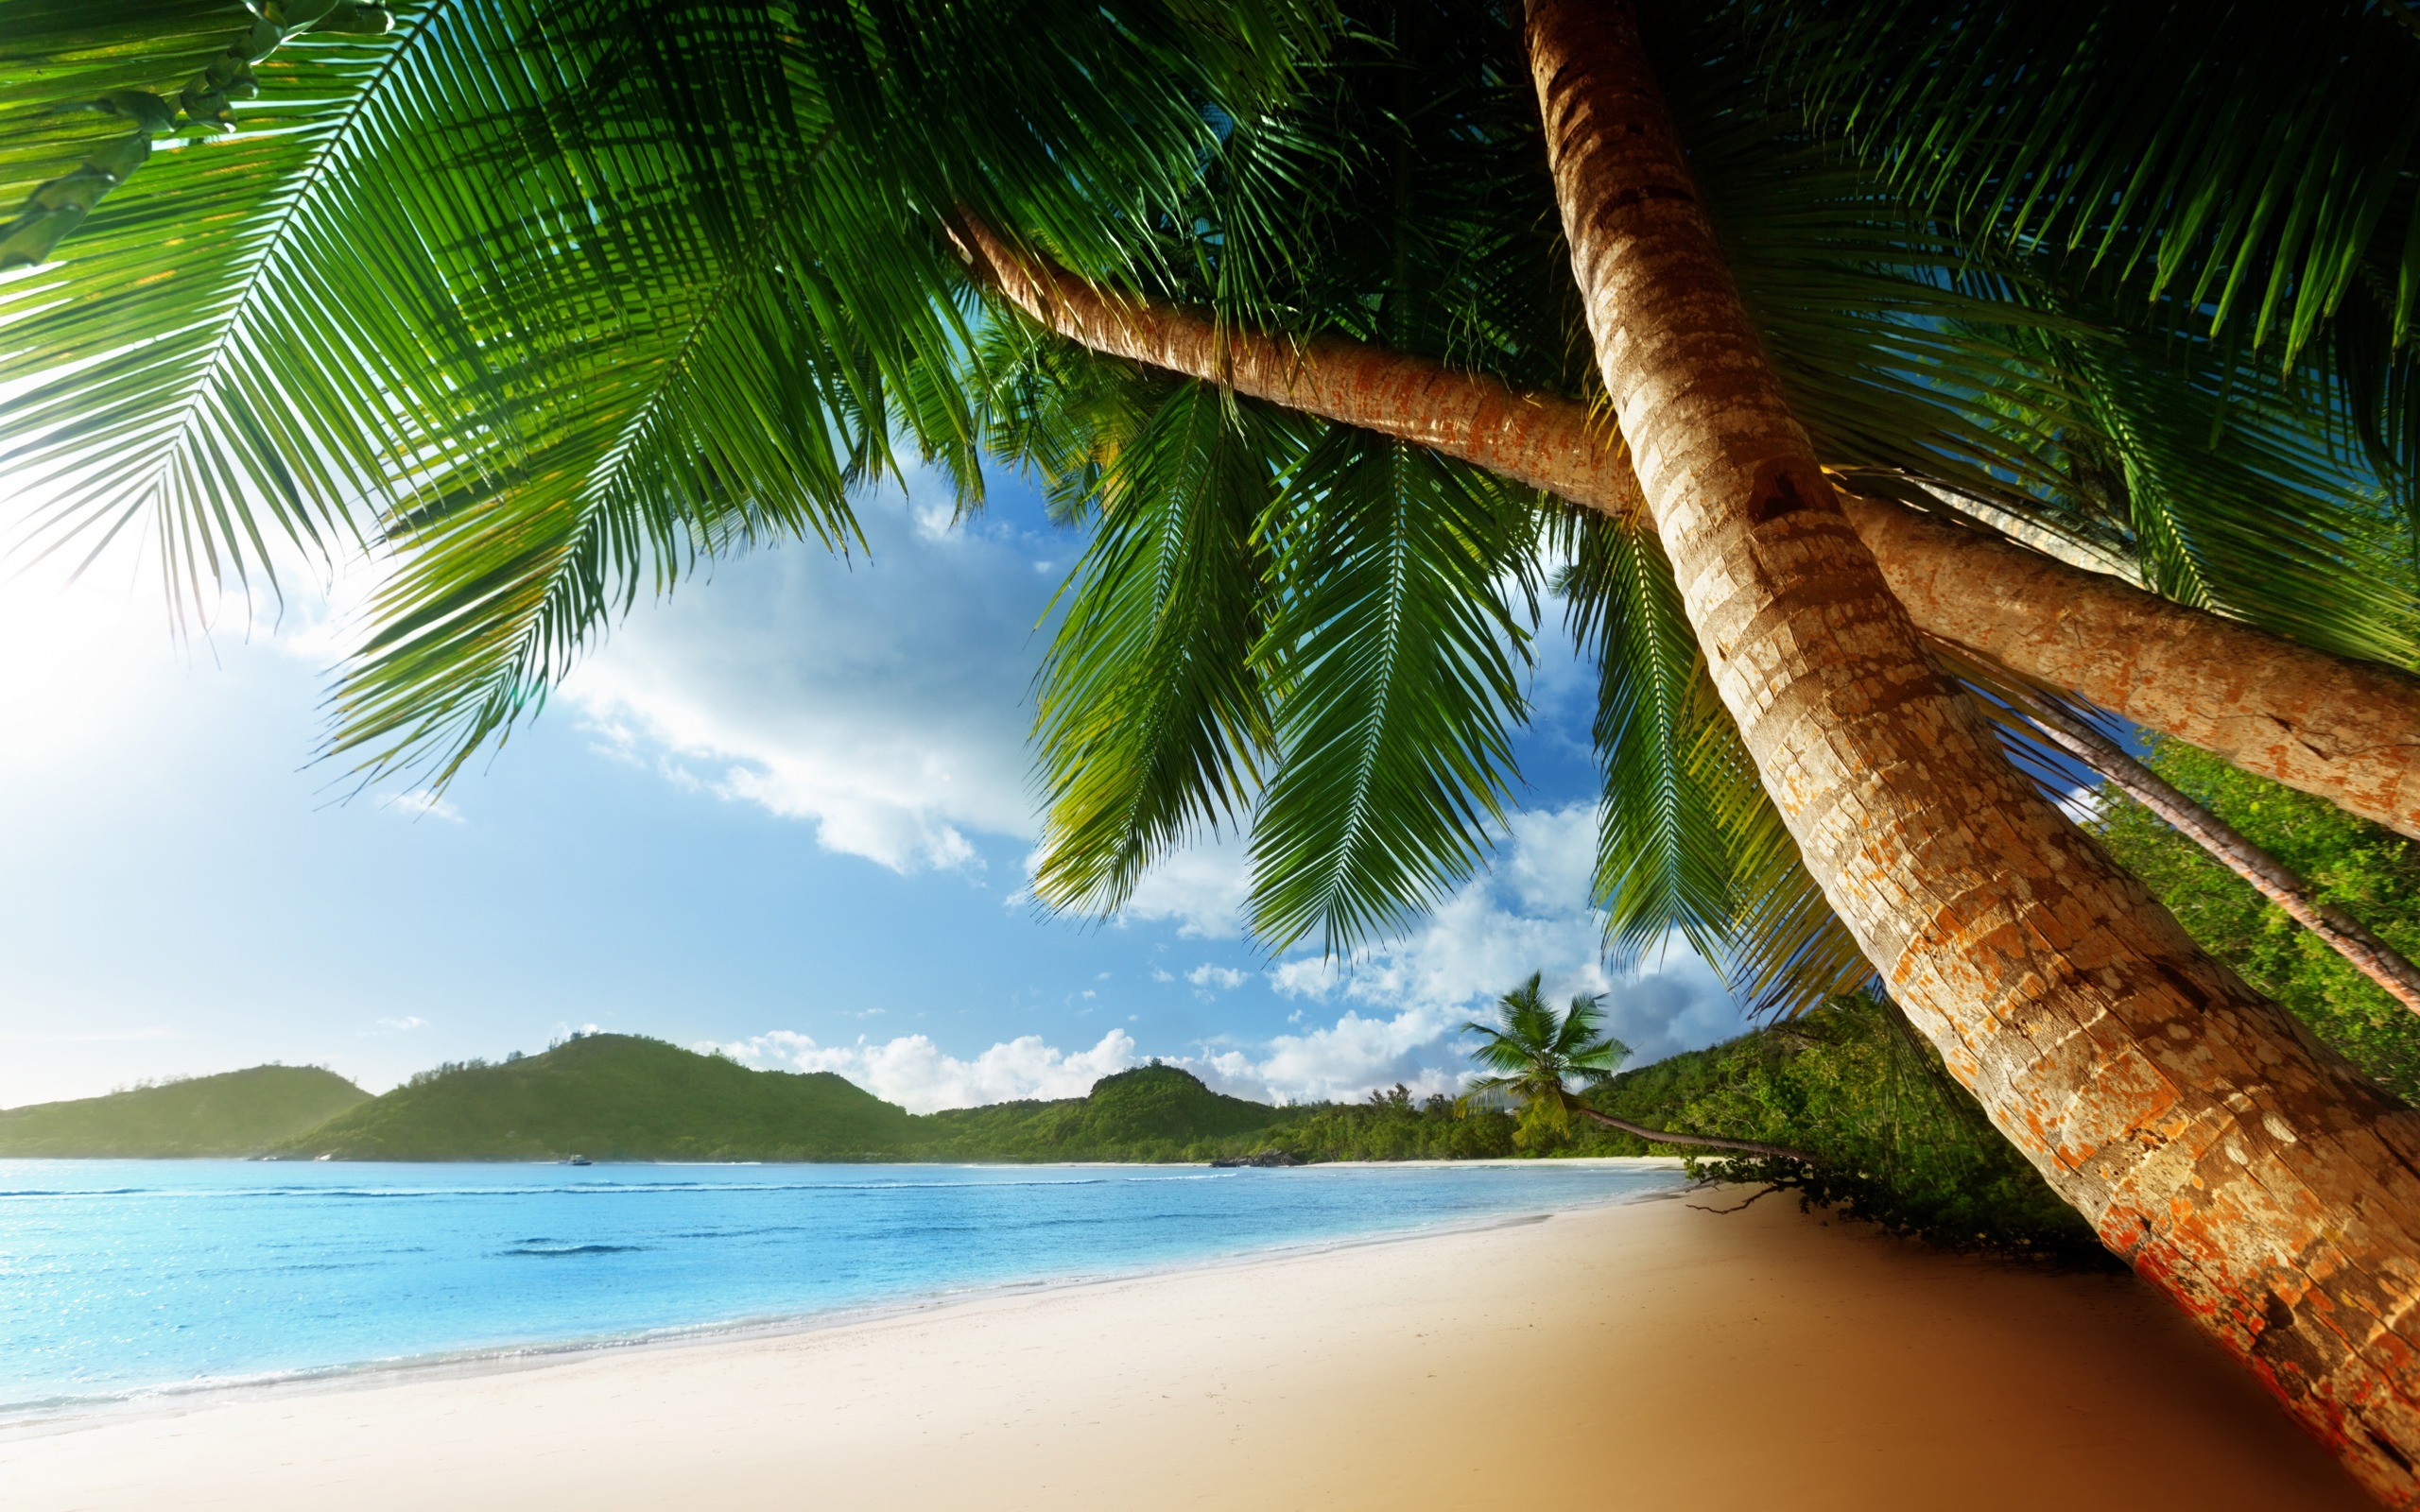 Tropical Palm Trees Beach Ocean Trees wallpaper 2560x1600 48637 2560x1600